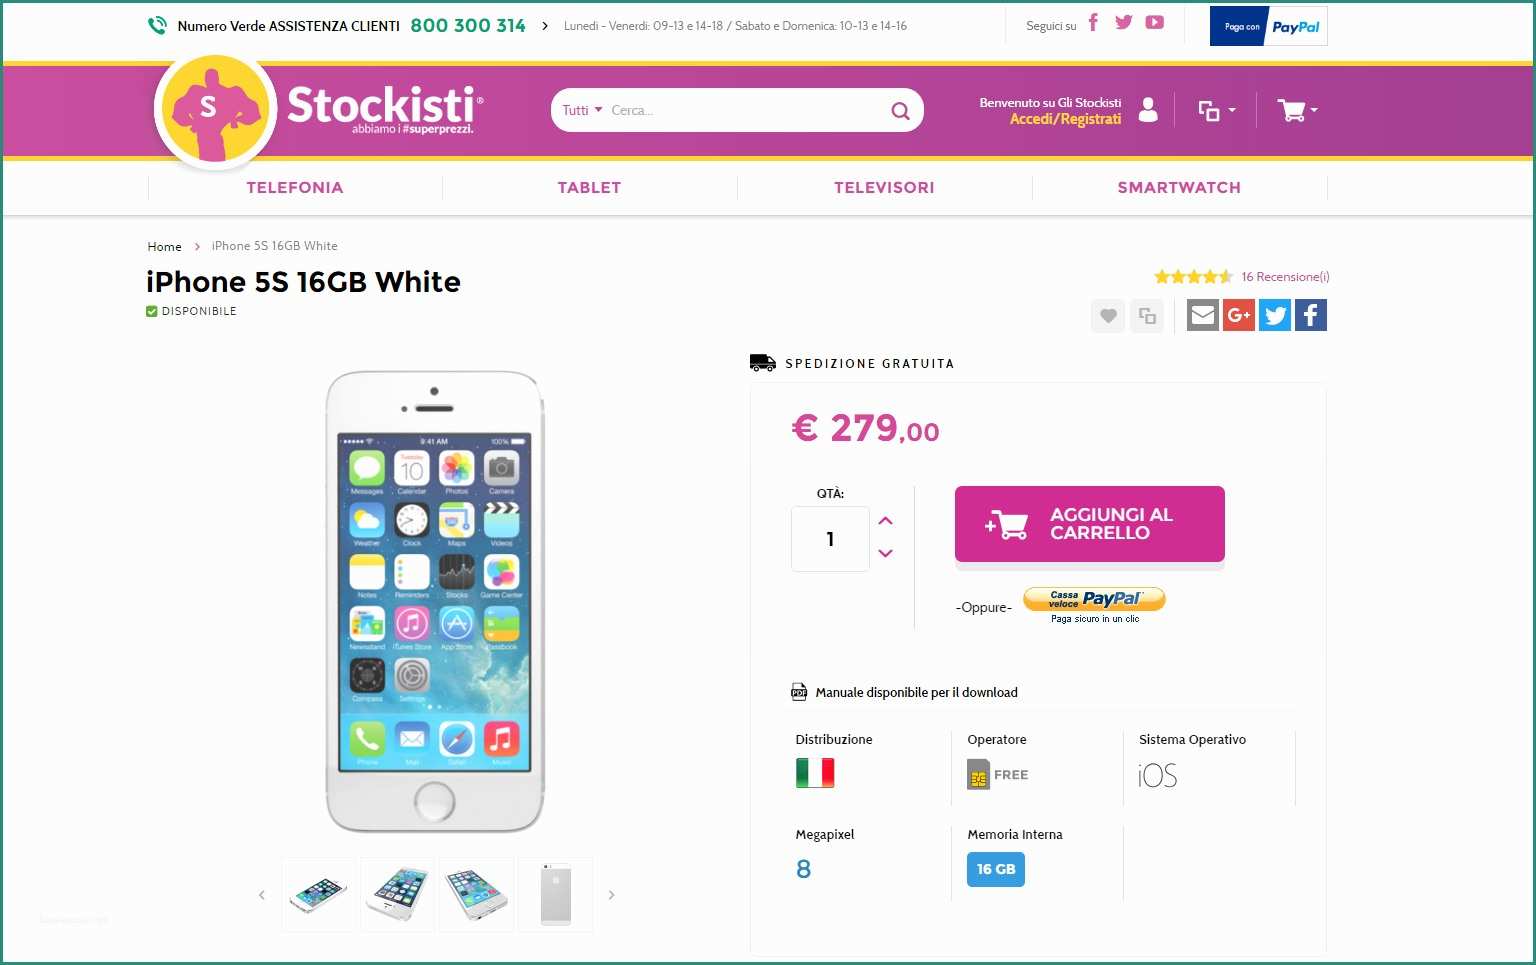 Gli Stockisti Coupon E Gli Stockisti iPhone 5s A 279€ E Nuovi Ribassi